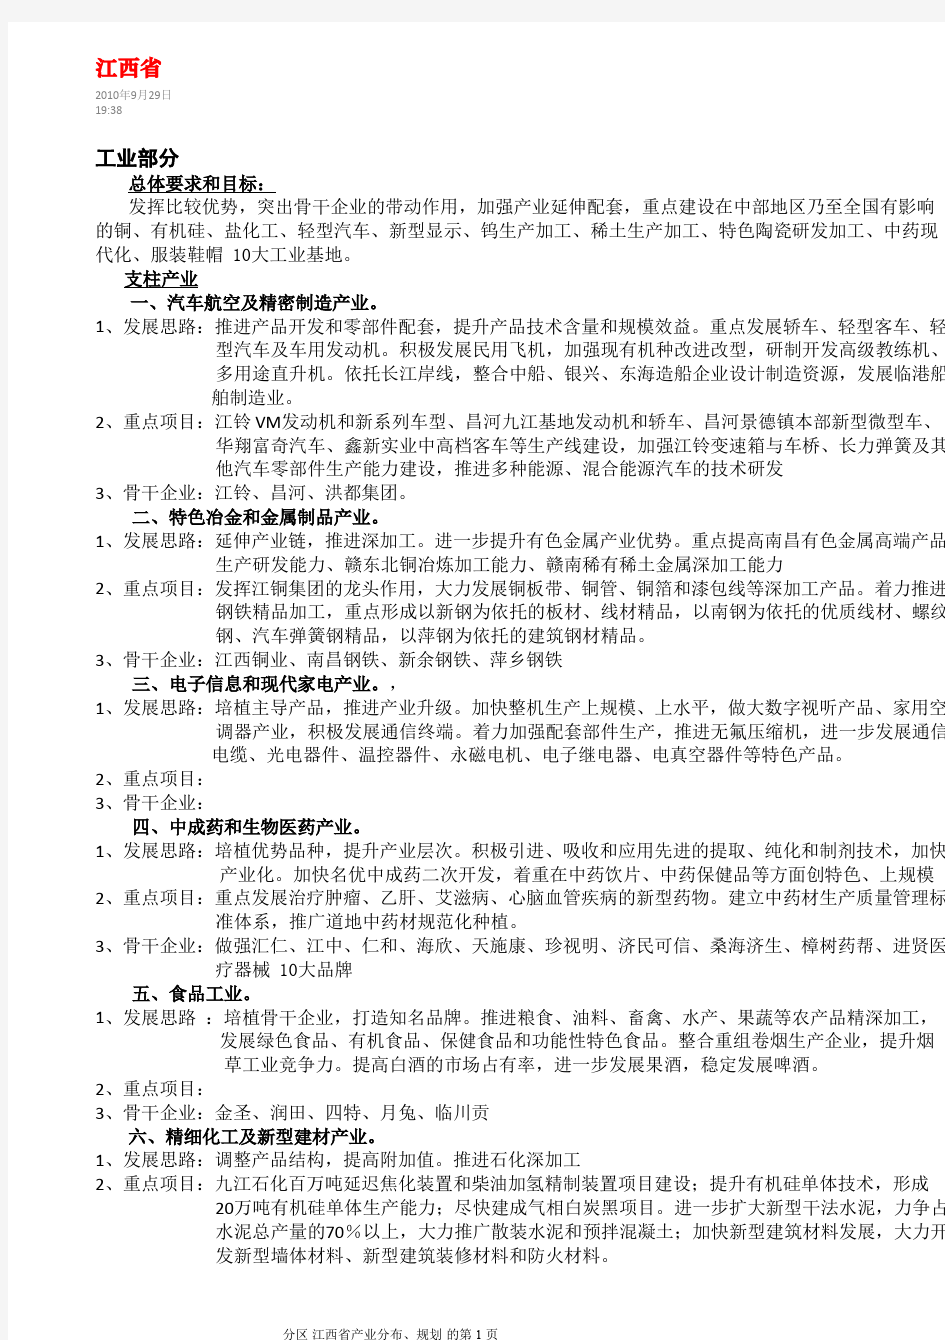 江西省产业分布、规划